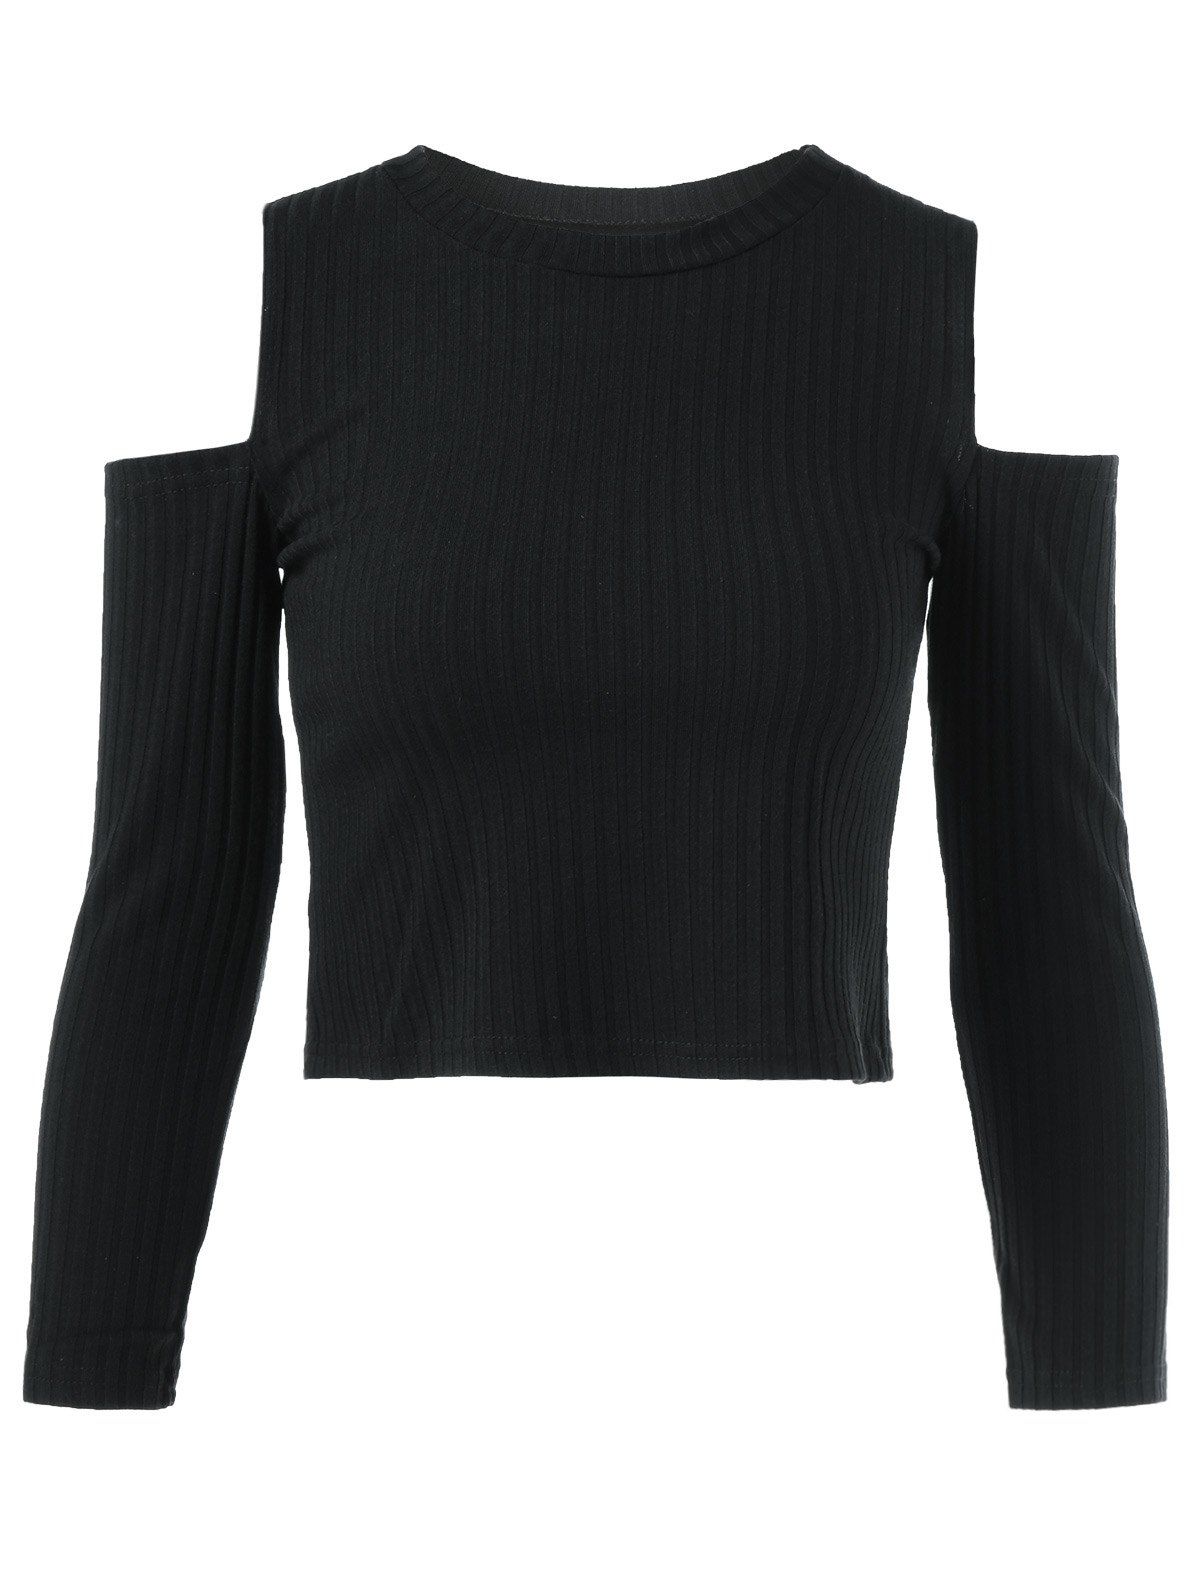 Cold Shoulder Plain Cropped Sweater - BLACK L